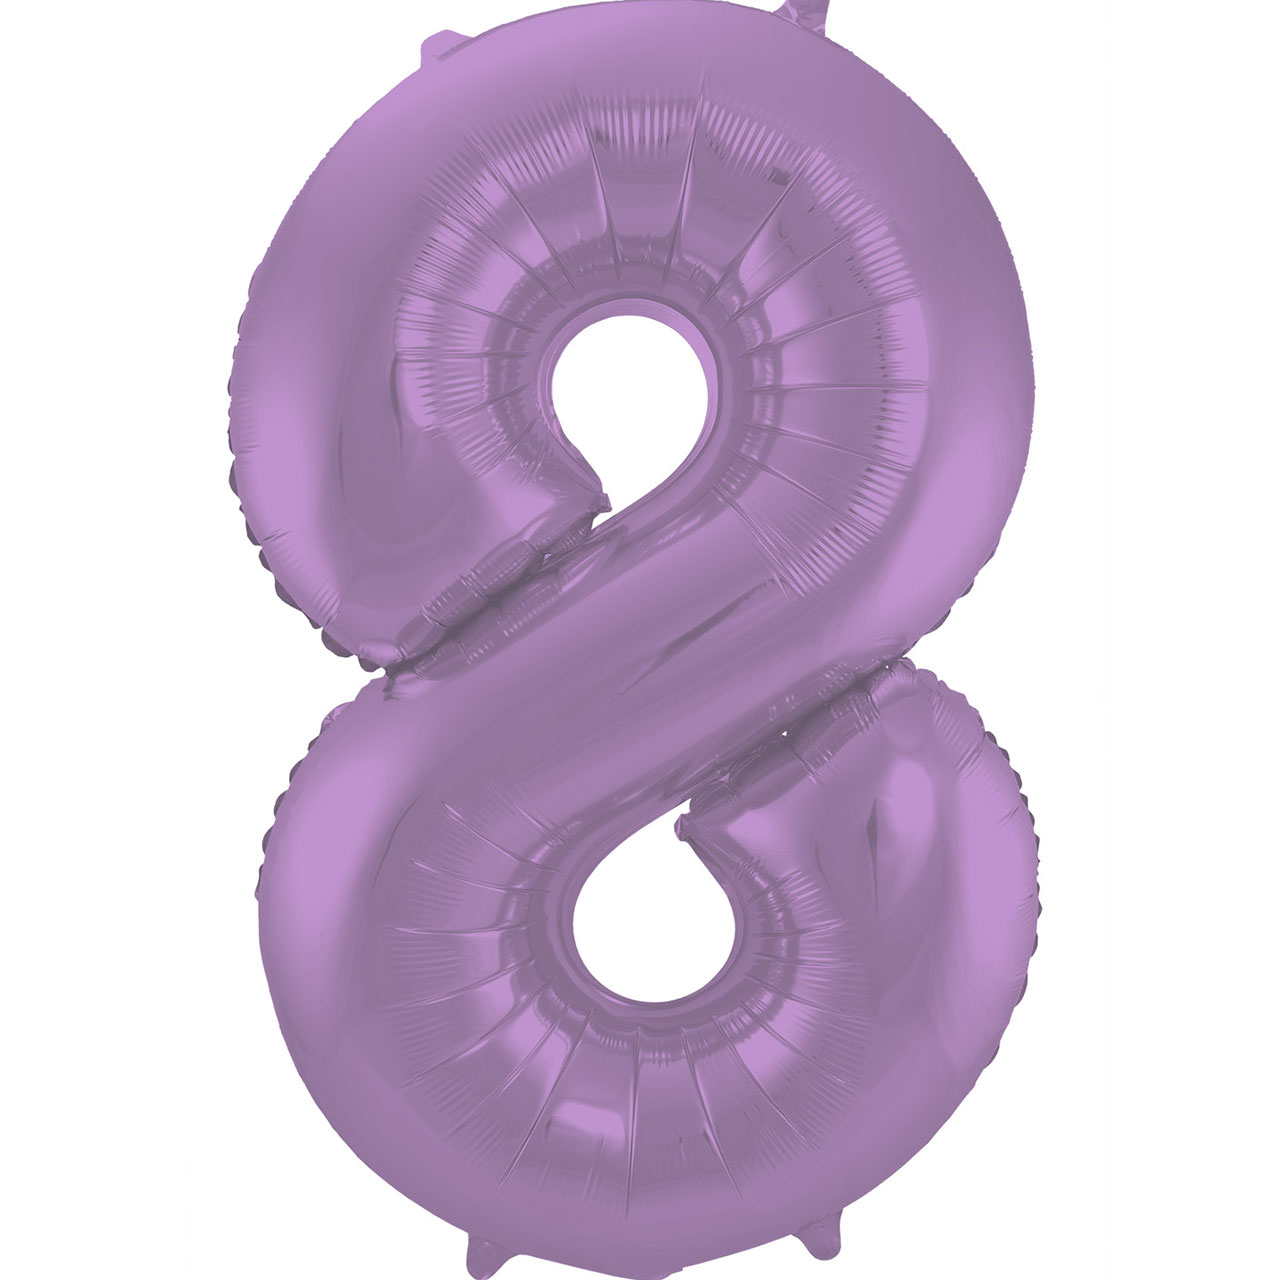 Foil Balloon Number 8 - Purple - 86 cm